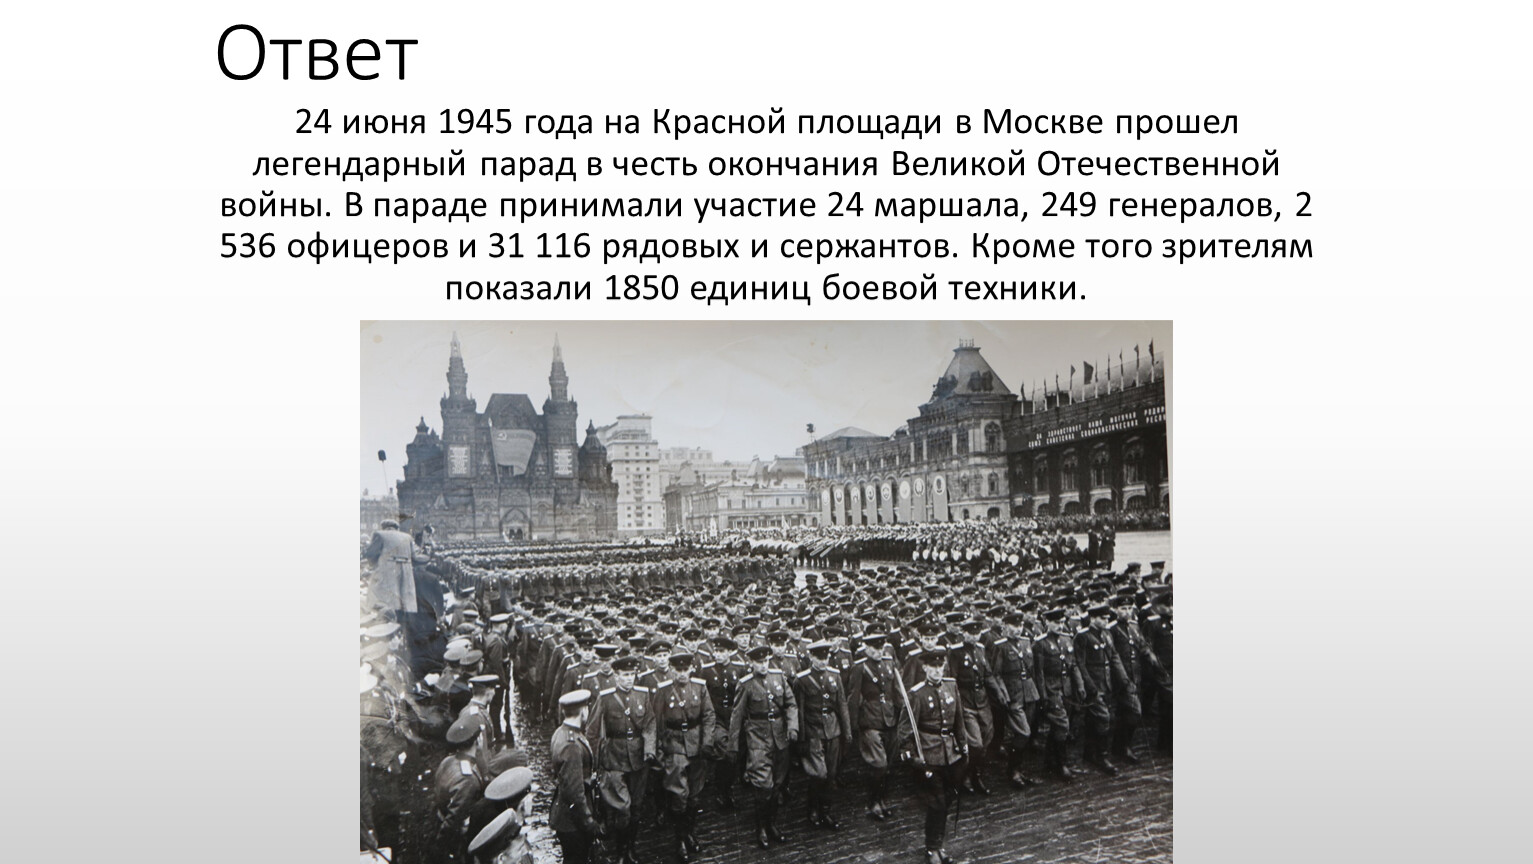 5 мая 19 год. Парад Победы сообщение. 24 Июня 1945 года событие. Парад Победы 1945 года. 24 Июня 1945 событие в Москве.